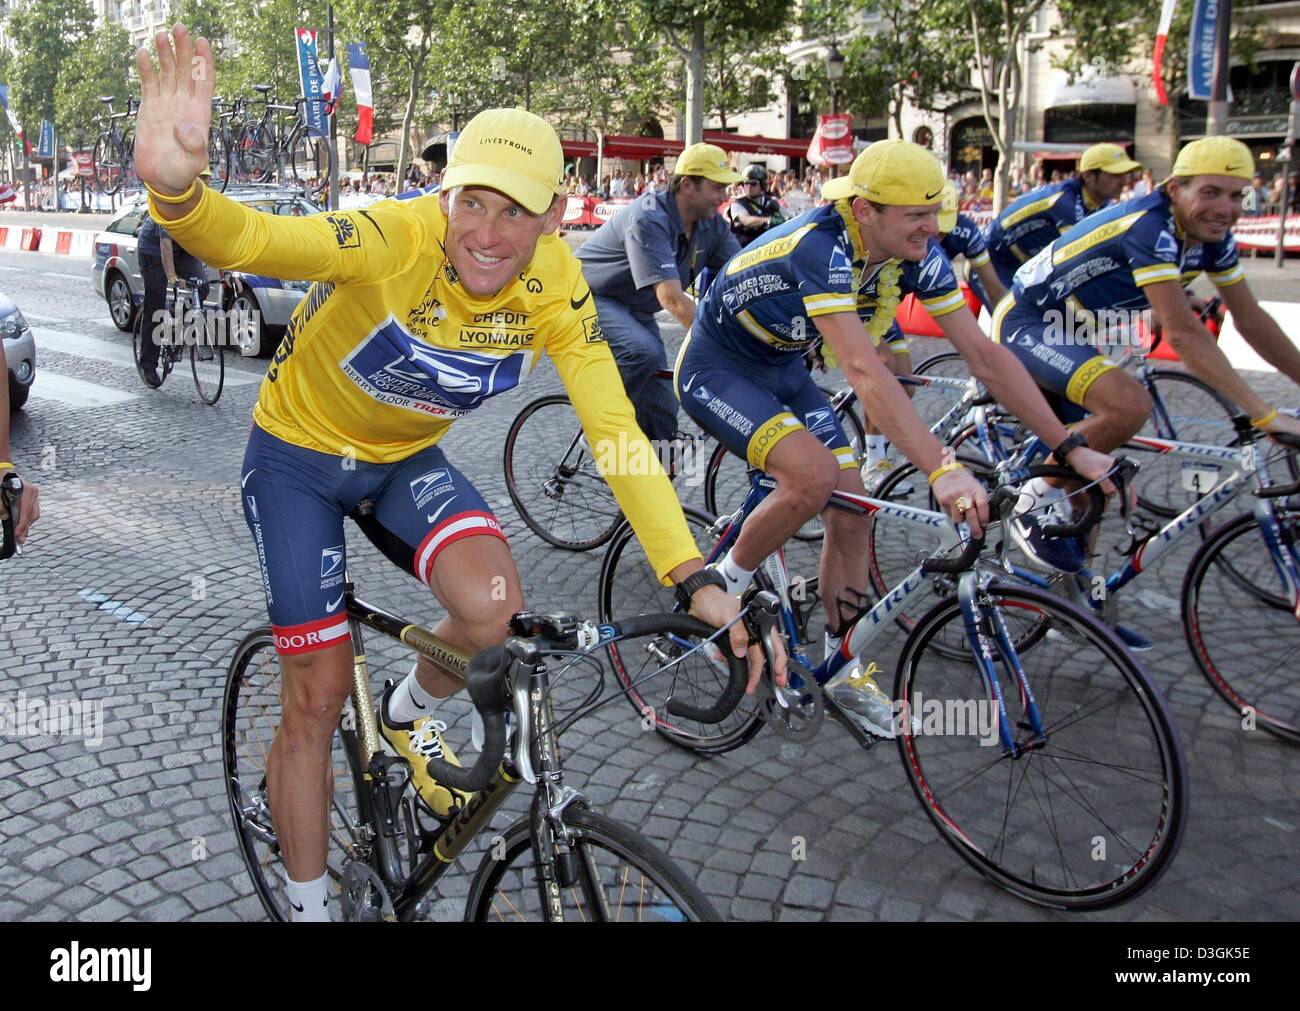 (Dpa) - US cycliste Lance Armstrong (L) comme il prend un tour d'honneur avec ses coéquipiers Vjatscheslav Postal nous Jekimov (R) de la Russie et Manuel Beltran de l'Espagne (2e à partir de R) et un directeur général de l'équipe de Johan Bruyneel (C, retour) après la fin de la dernière étape du Tour de France cycliste à Paris, France, 25 juillet 2004. Selon la tradition overal Banque D'Images